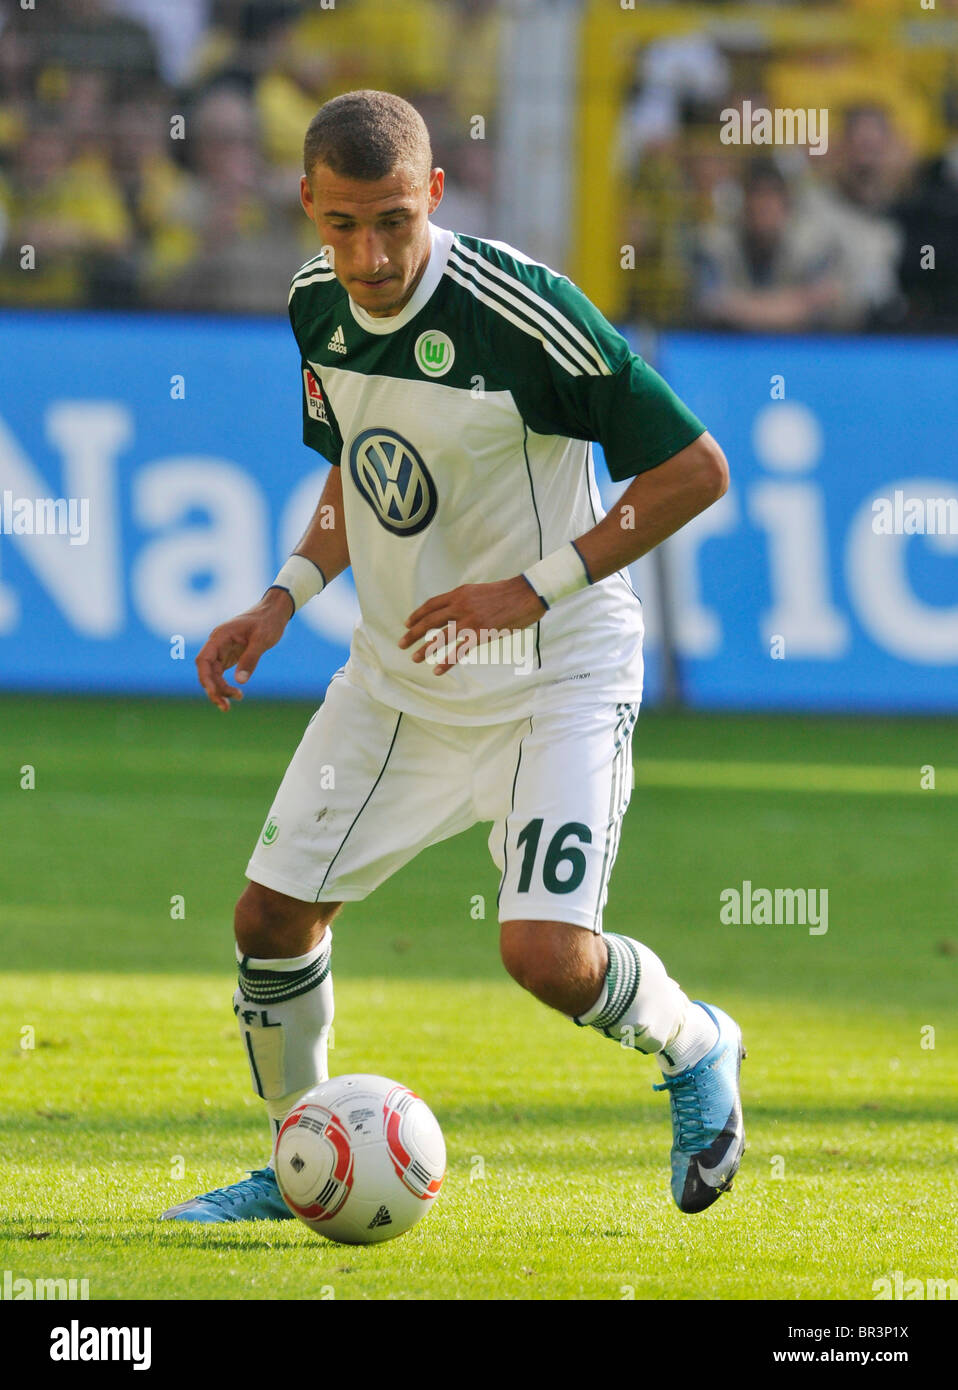 Fabian JOHNSON, VfL Wolfsburg, german Bundesliga match Borussia Dortmund vs VfL Wolfsburg Stock Photo